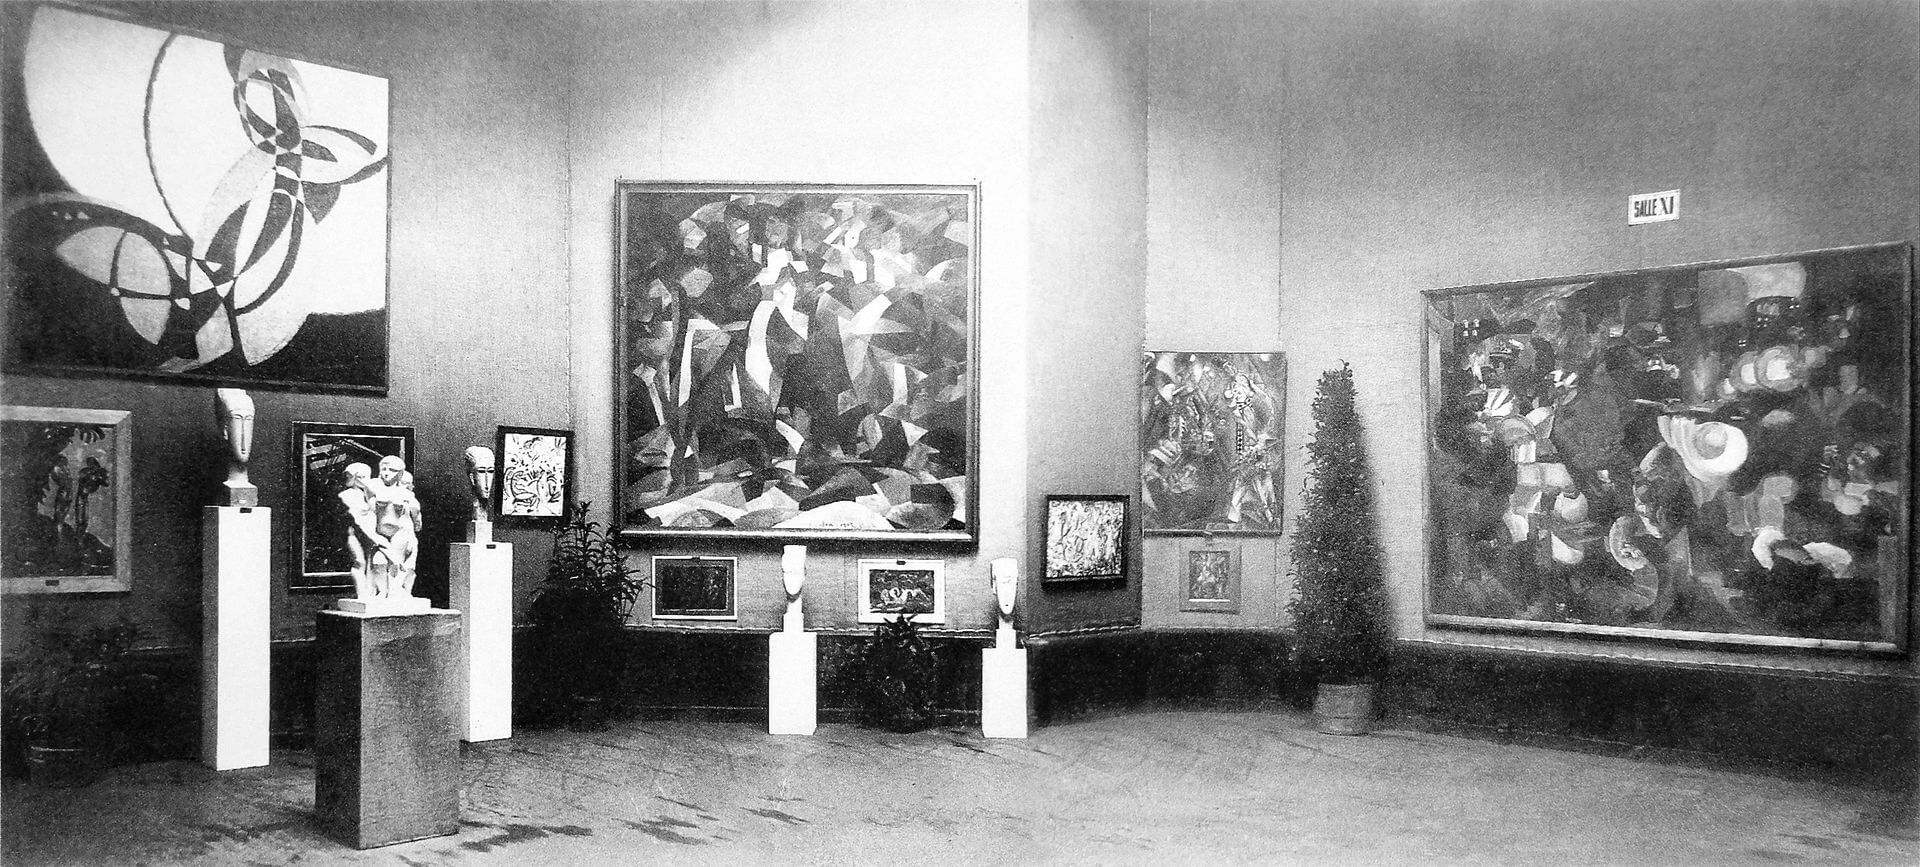 Salon d'Automne 1912, París, obras expuestas por Kupka, Modigliani, Csaky, Picabia, Metzinger, Le Fauconnier